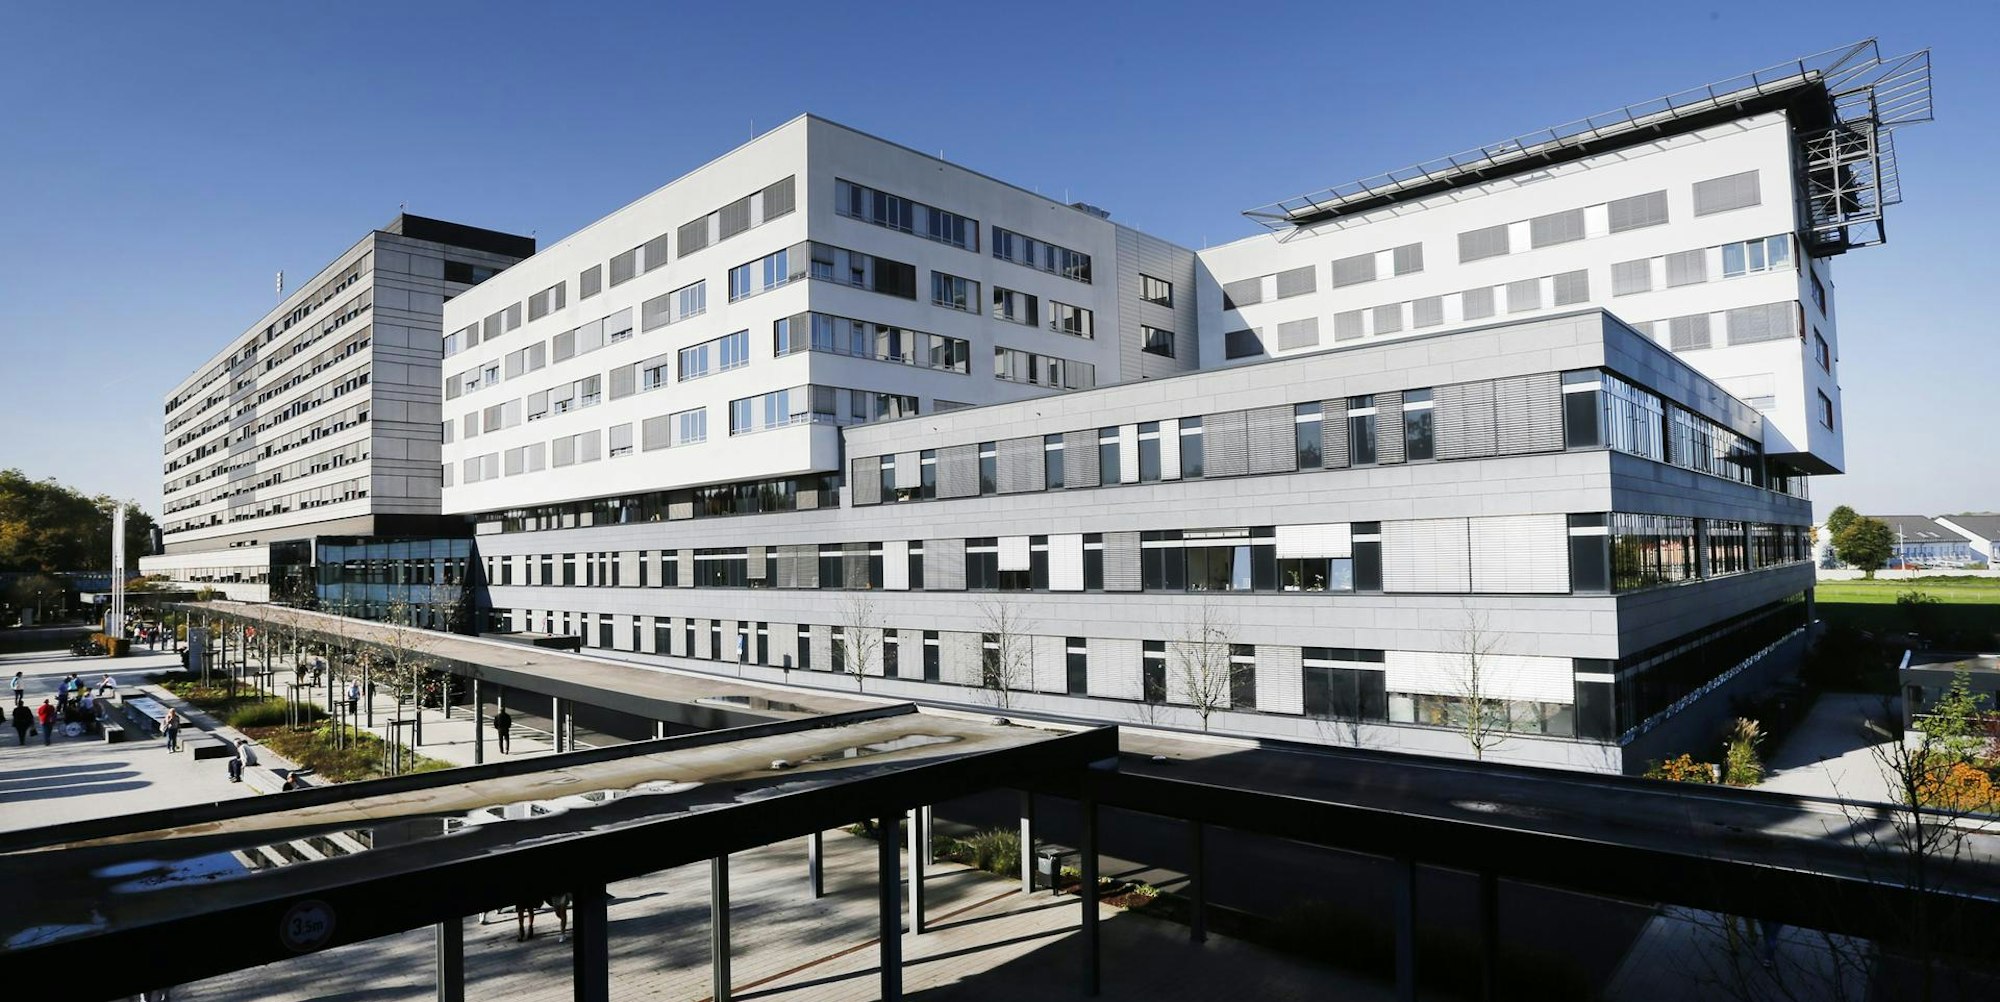 Klinik Merheim